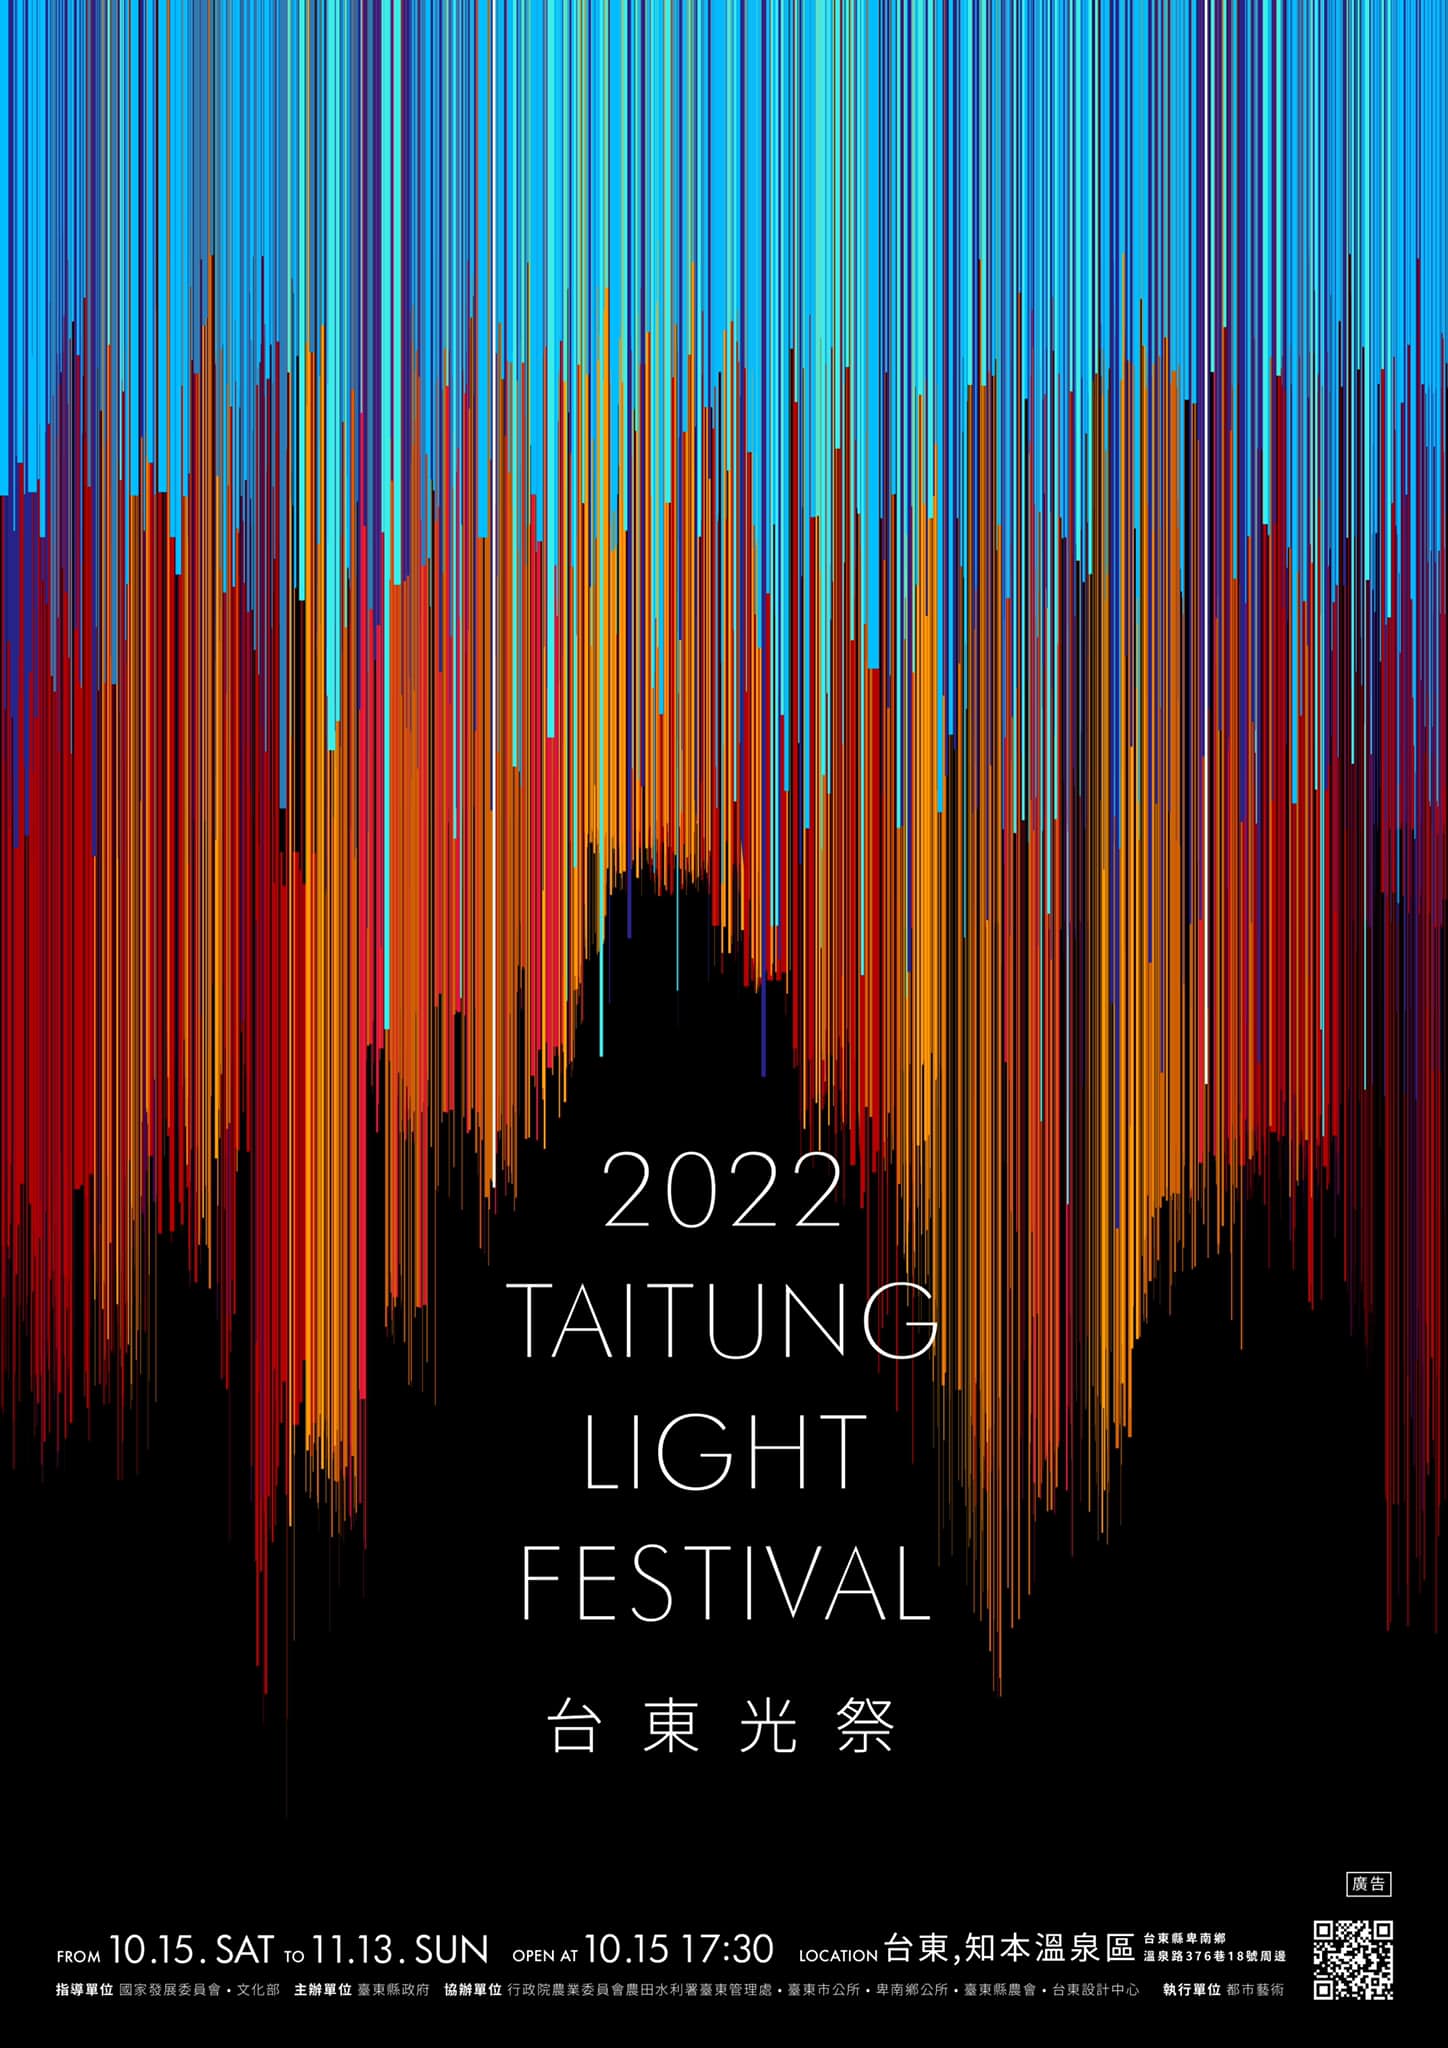 【活動】台東光祭 Taitung Light Festival